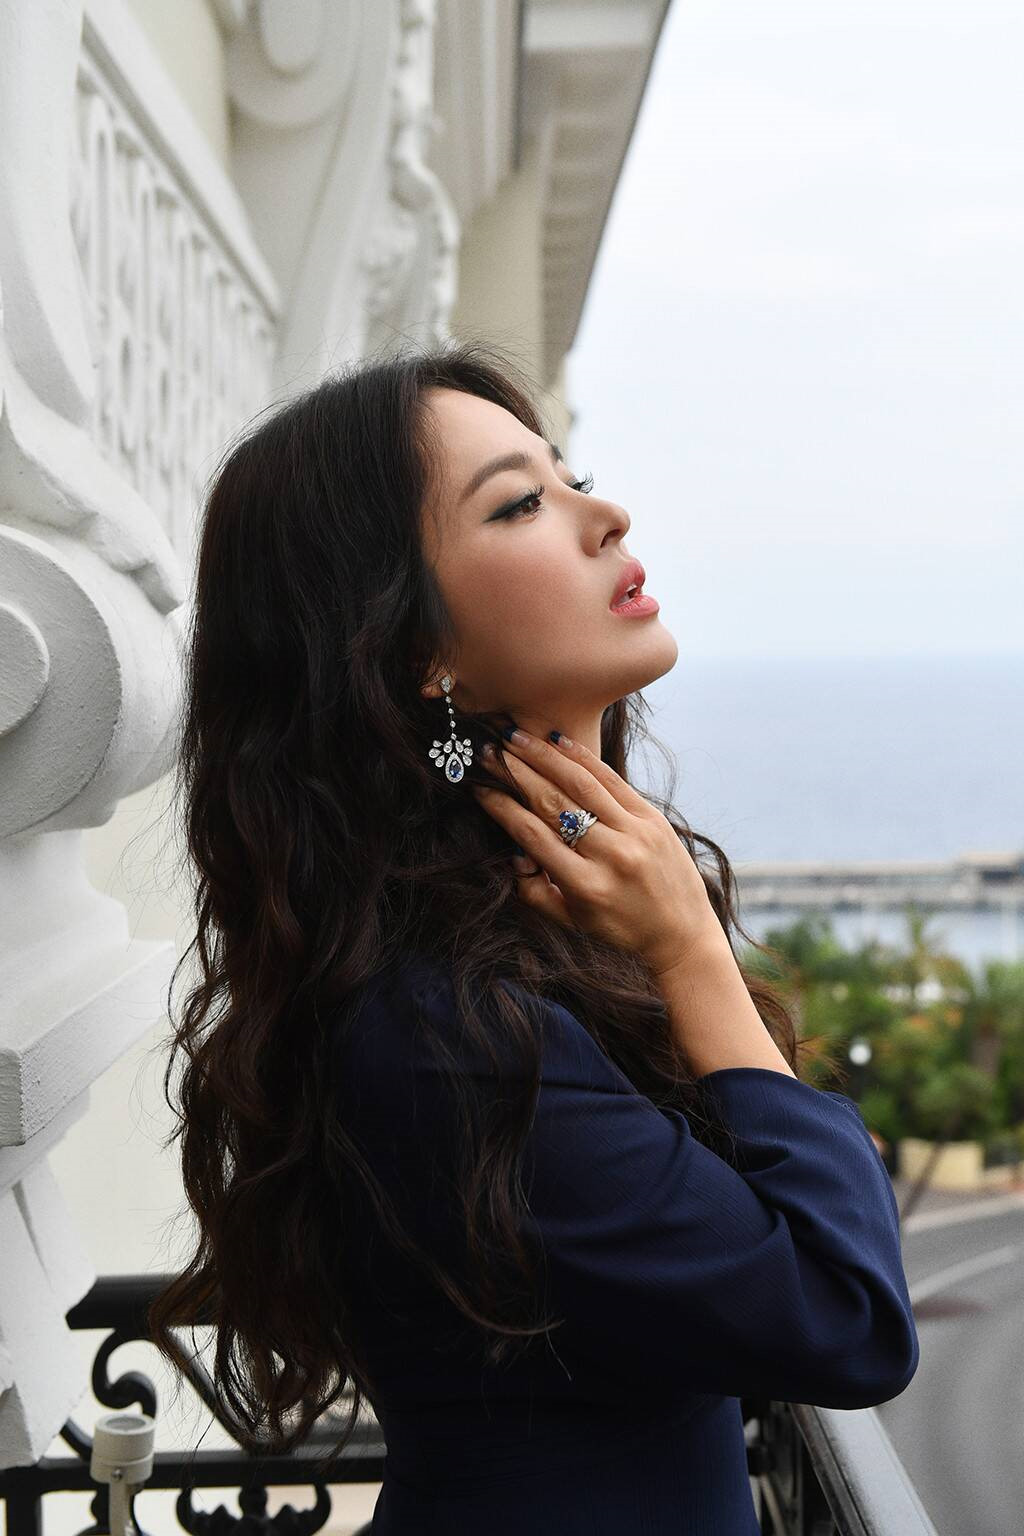 Báo Anh bình chọn mỹ nhân đẹp nhất xứ Hàn, Song Hye Kyo đứng đầu - Ảnh 4